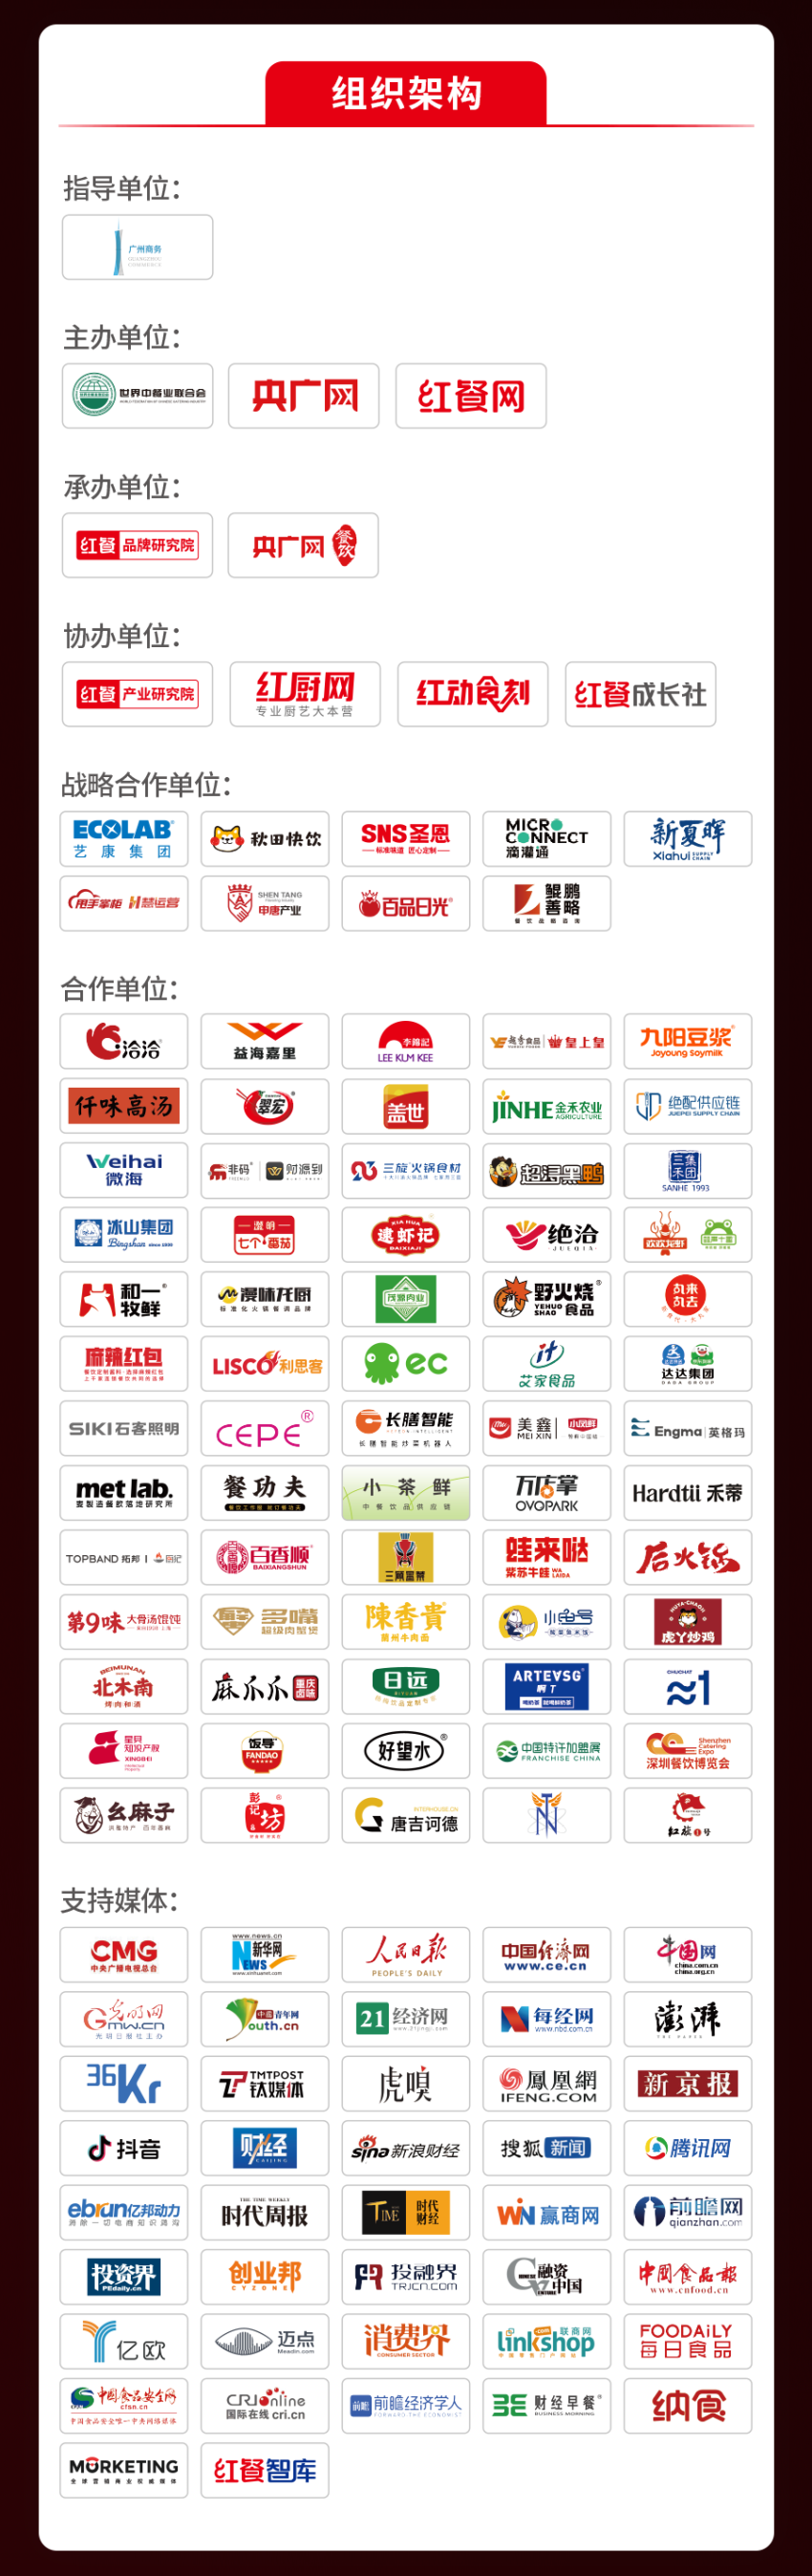 盛况回顾！全面解读“第三届中国餐饮品牌节”